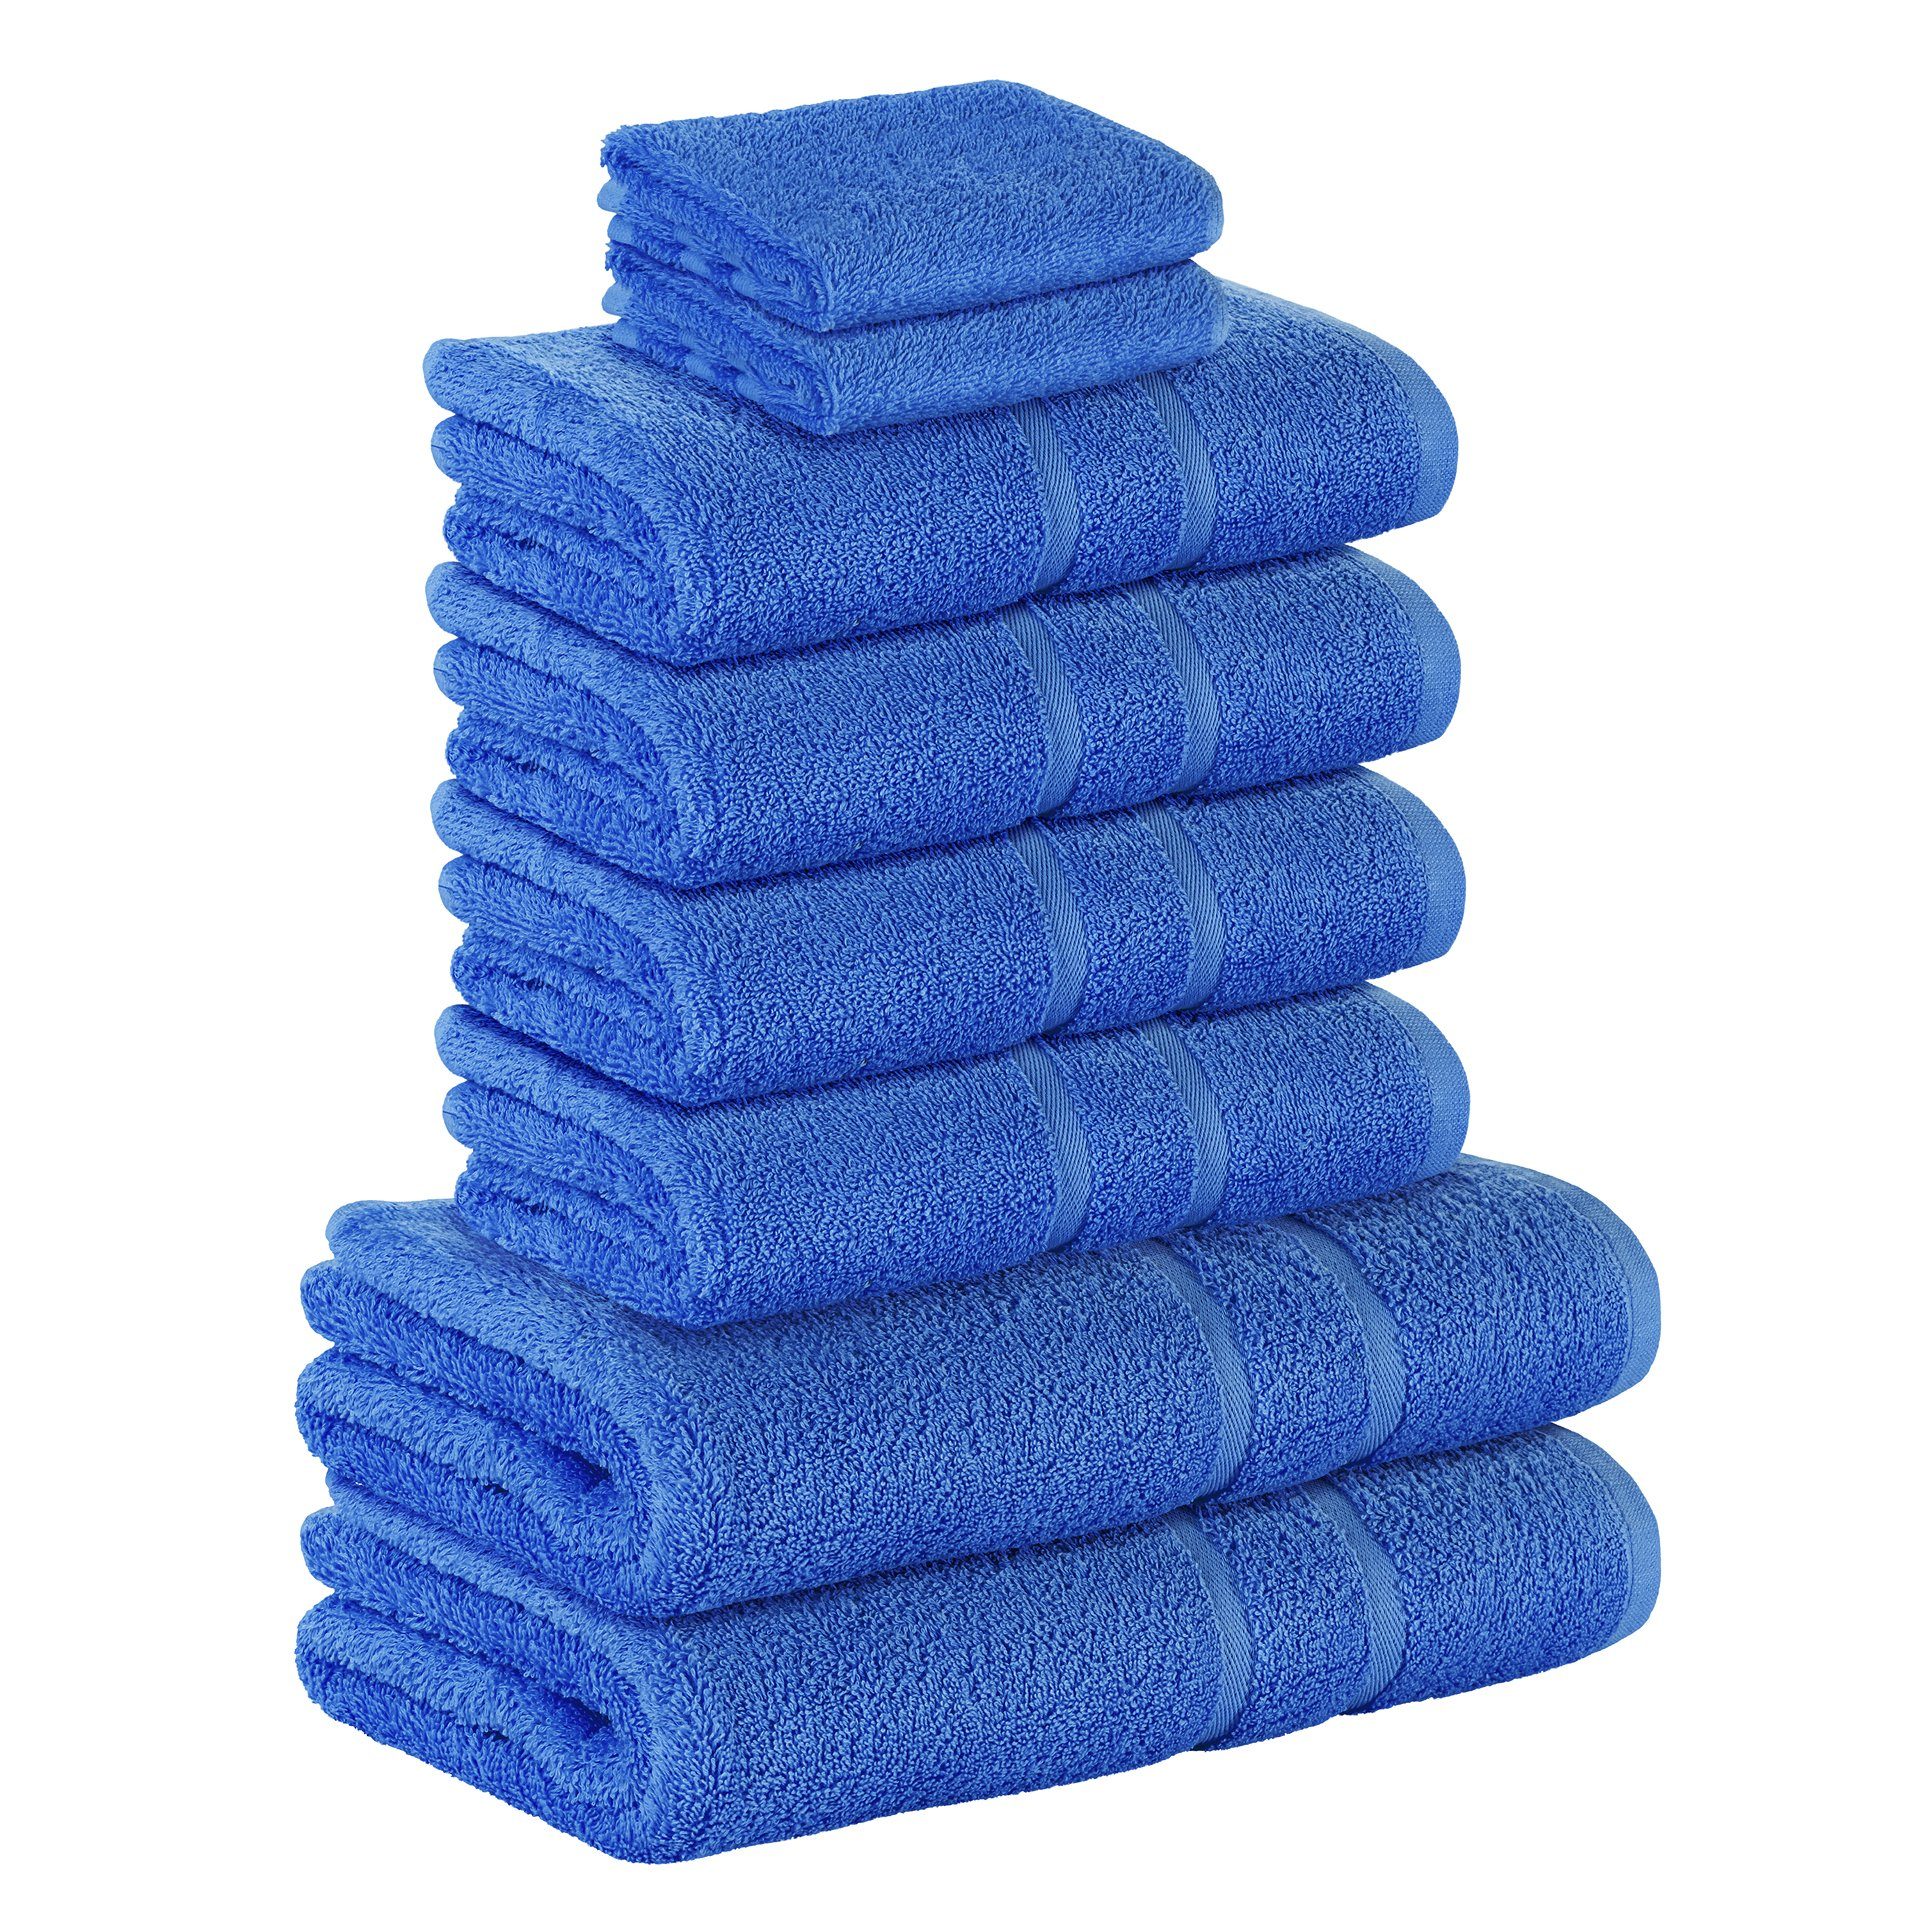 StickandShine Handtuch Set 2x Gästehandtuch 4x Handtücher 2x Duschtücher als SET in verschiedenen Farben (8 Teilig) 100% Baumwolle 500 GSM Frottee 8er Handtuch Pack, 100% Baumwolle 500 GSM Blau